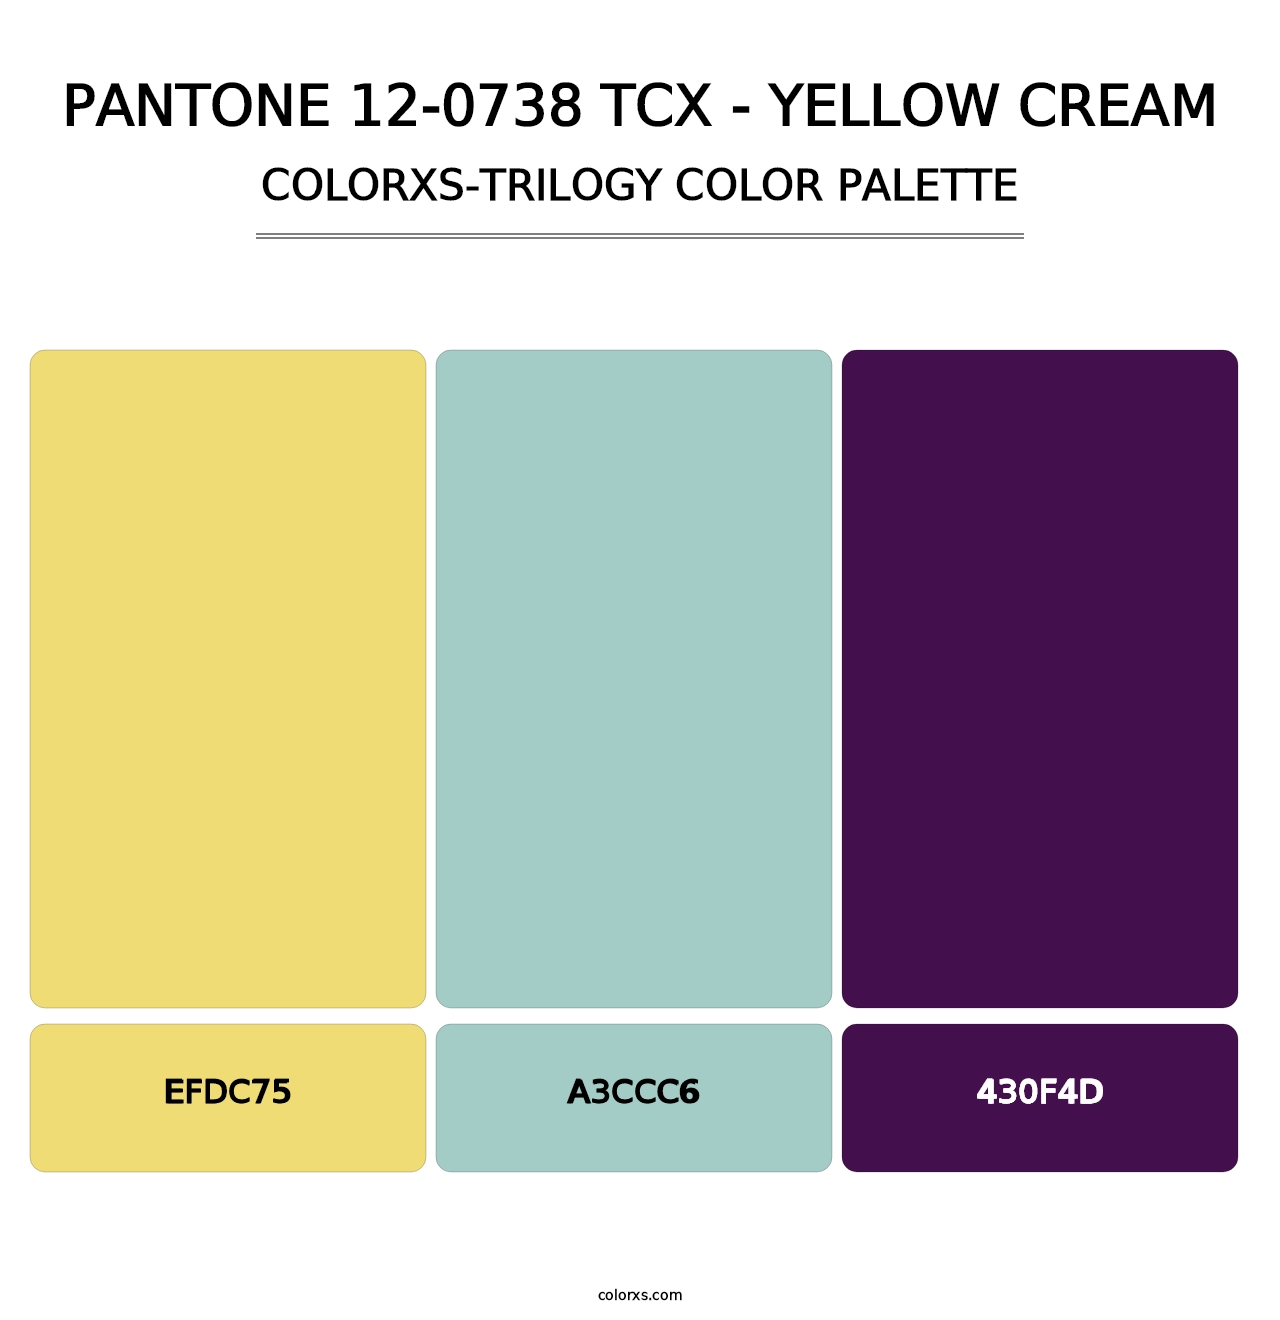 PANTONE 12-0738 TCX - Yellow Cream - Colorxs Trilogy Palette